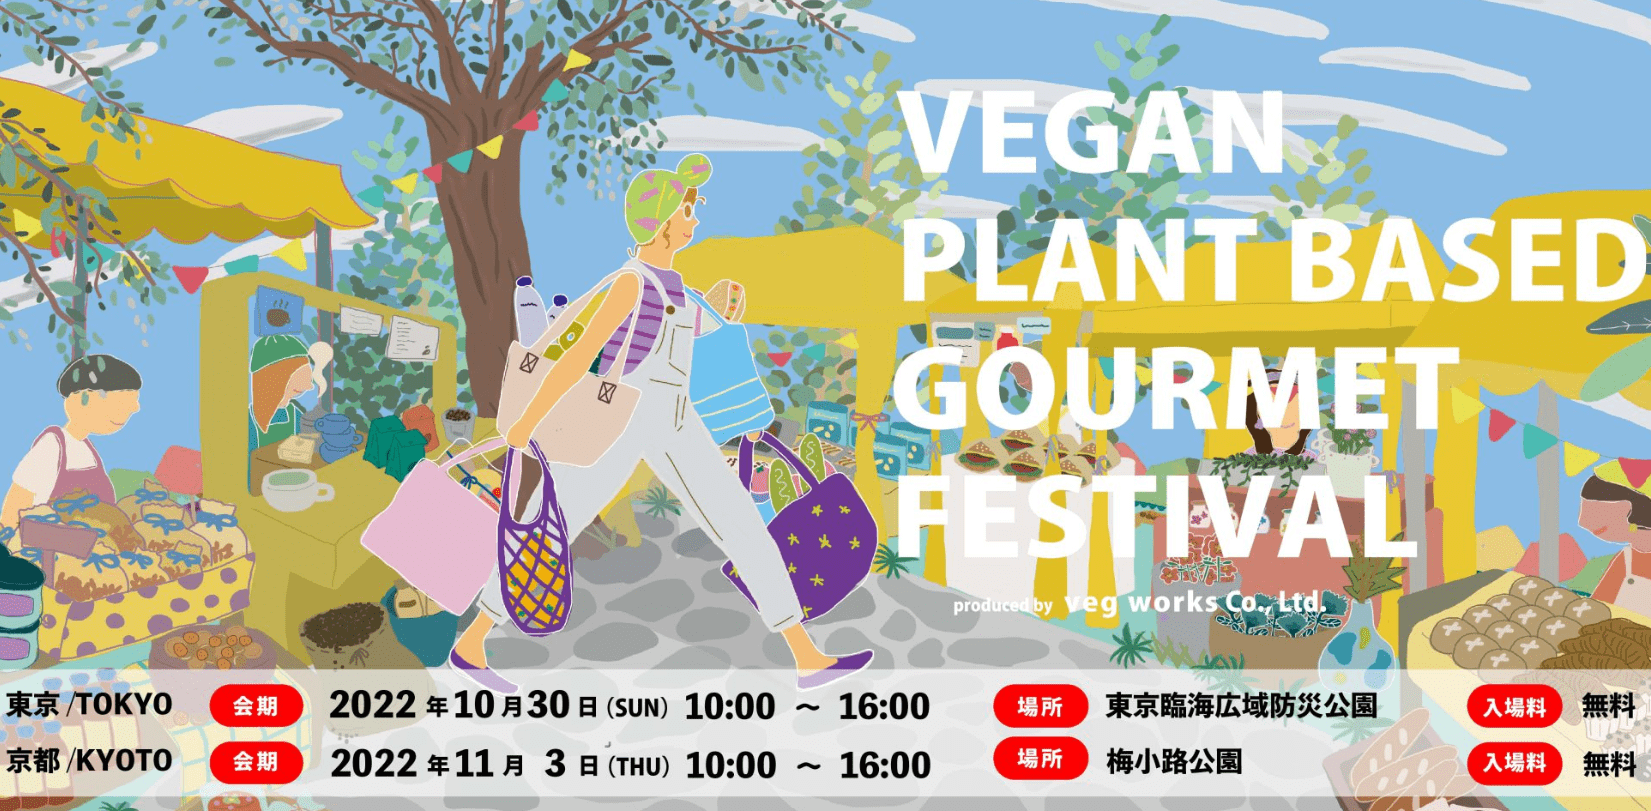 Vegan Plant Based Gourmet Festival